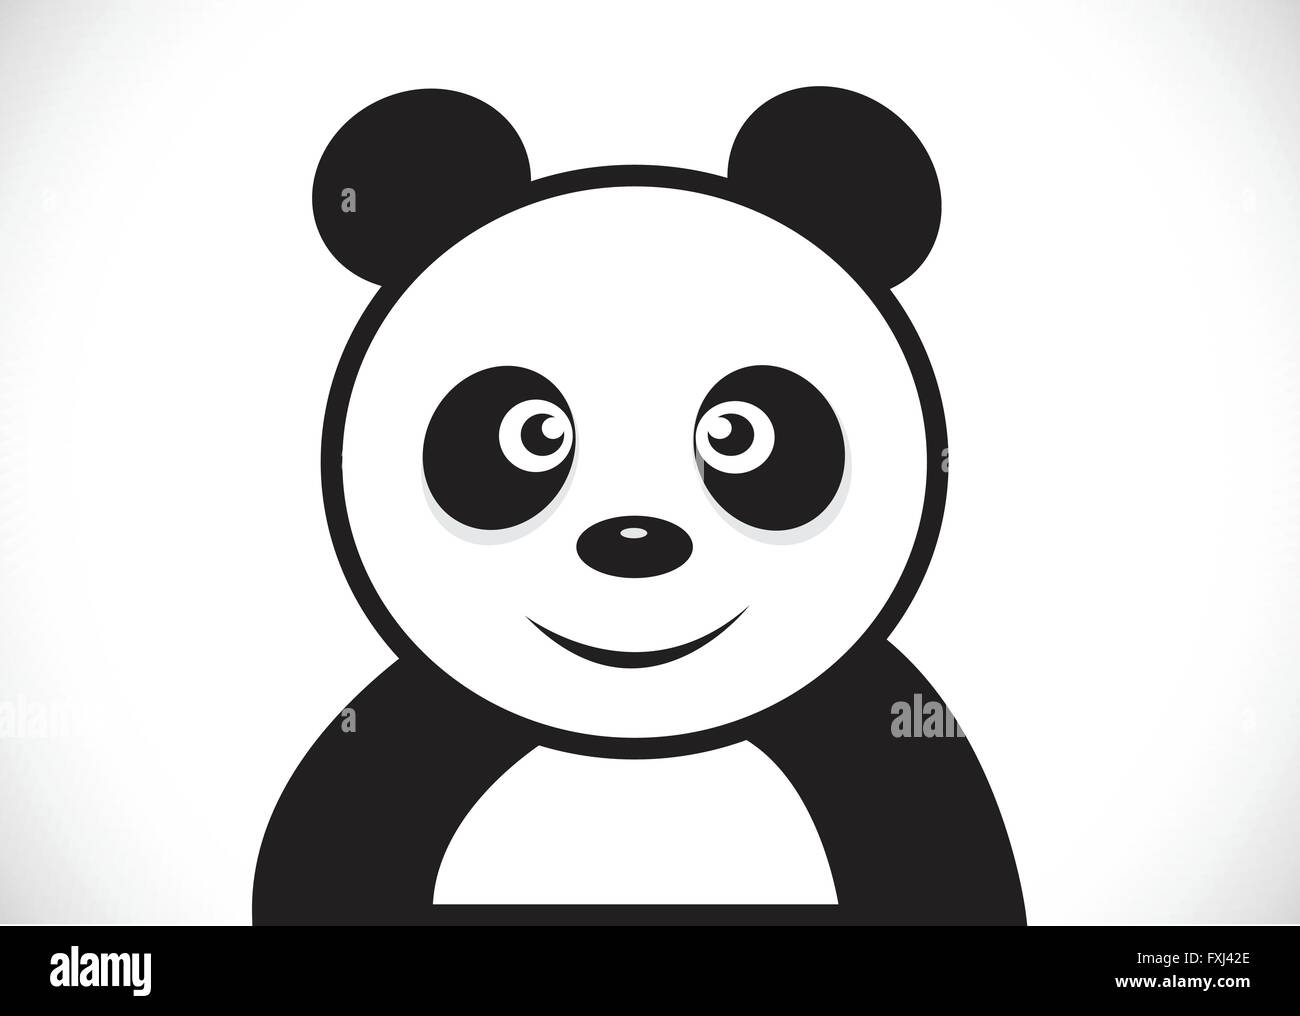 Panda cartoon character Stock Vector